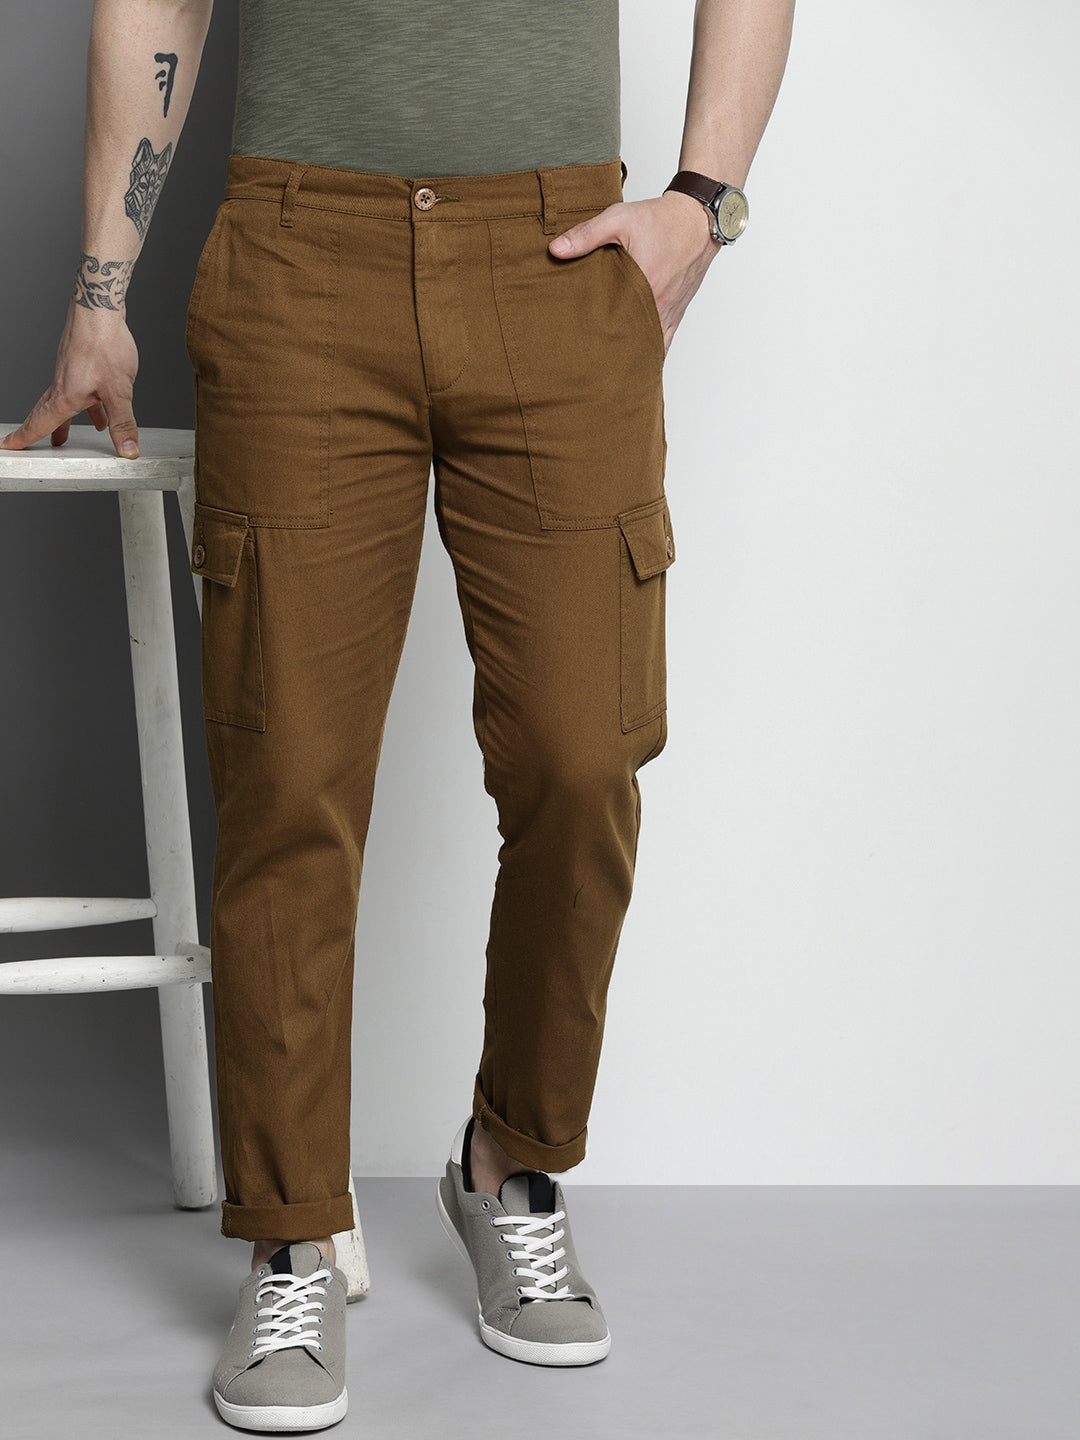 Shop Men Cargo Pants Online.